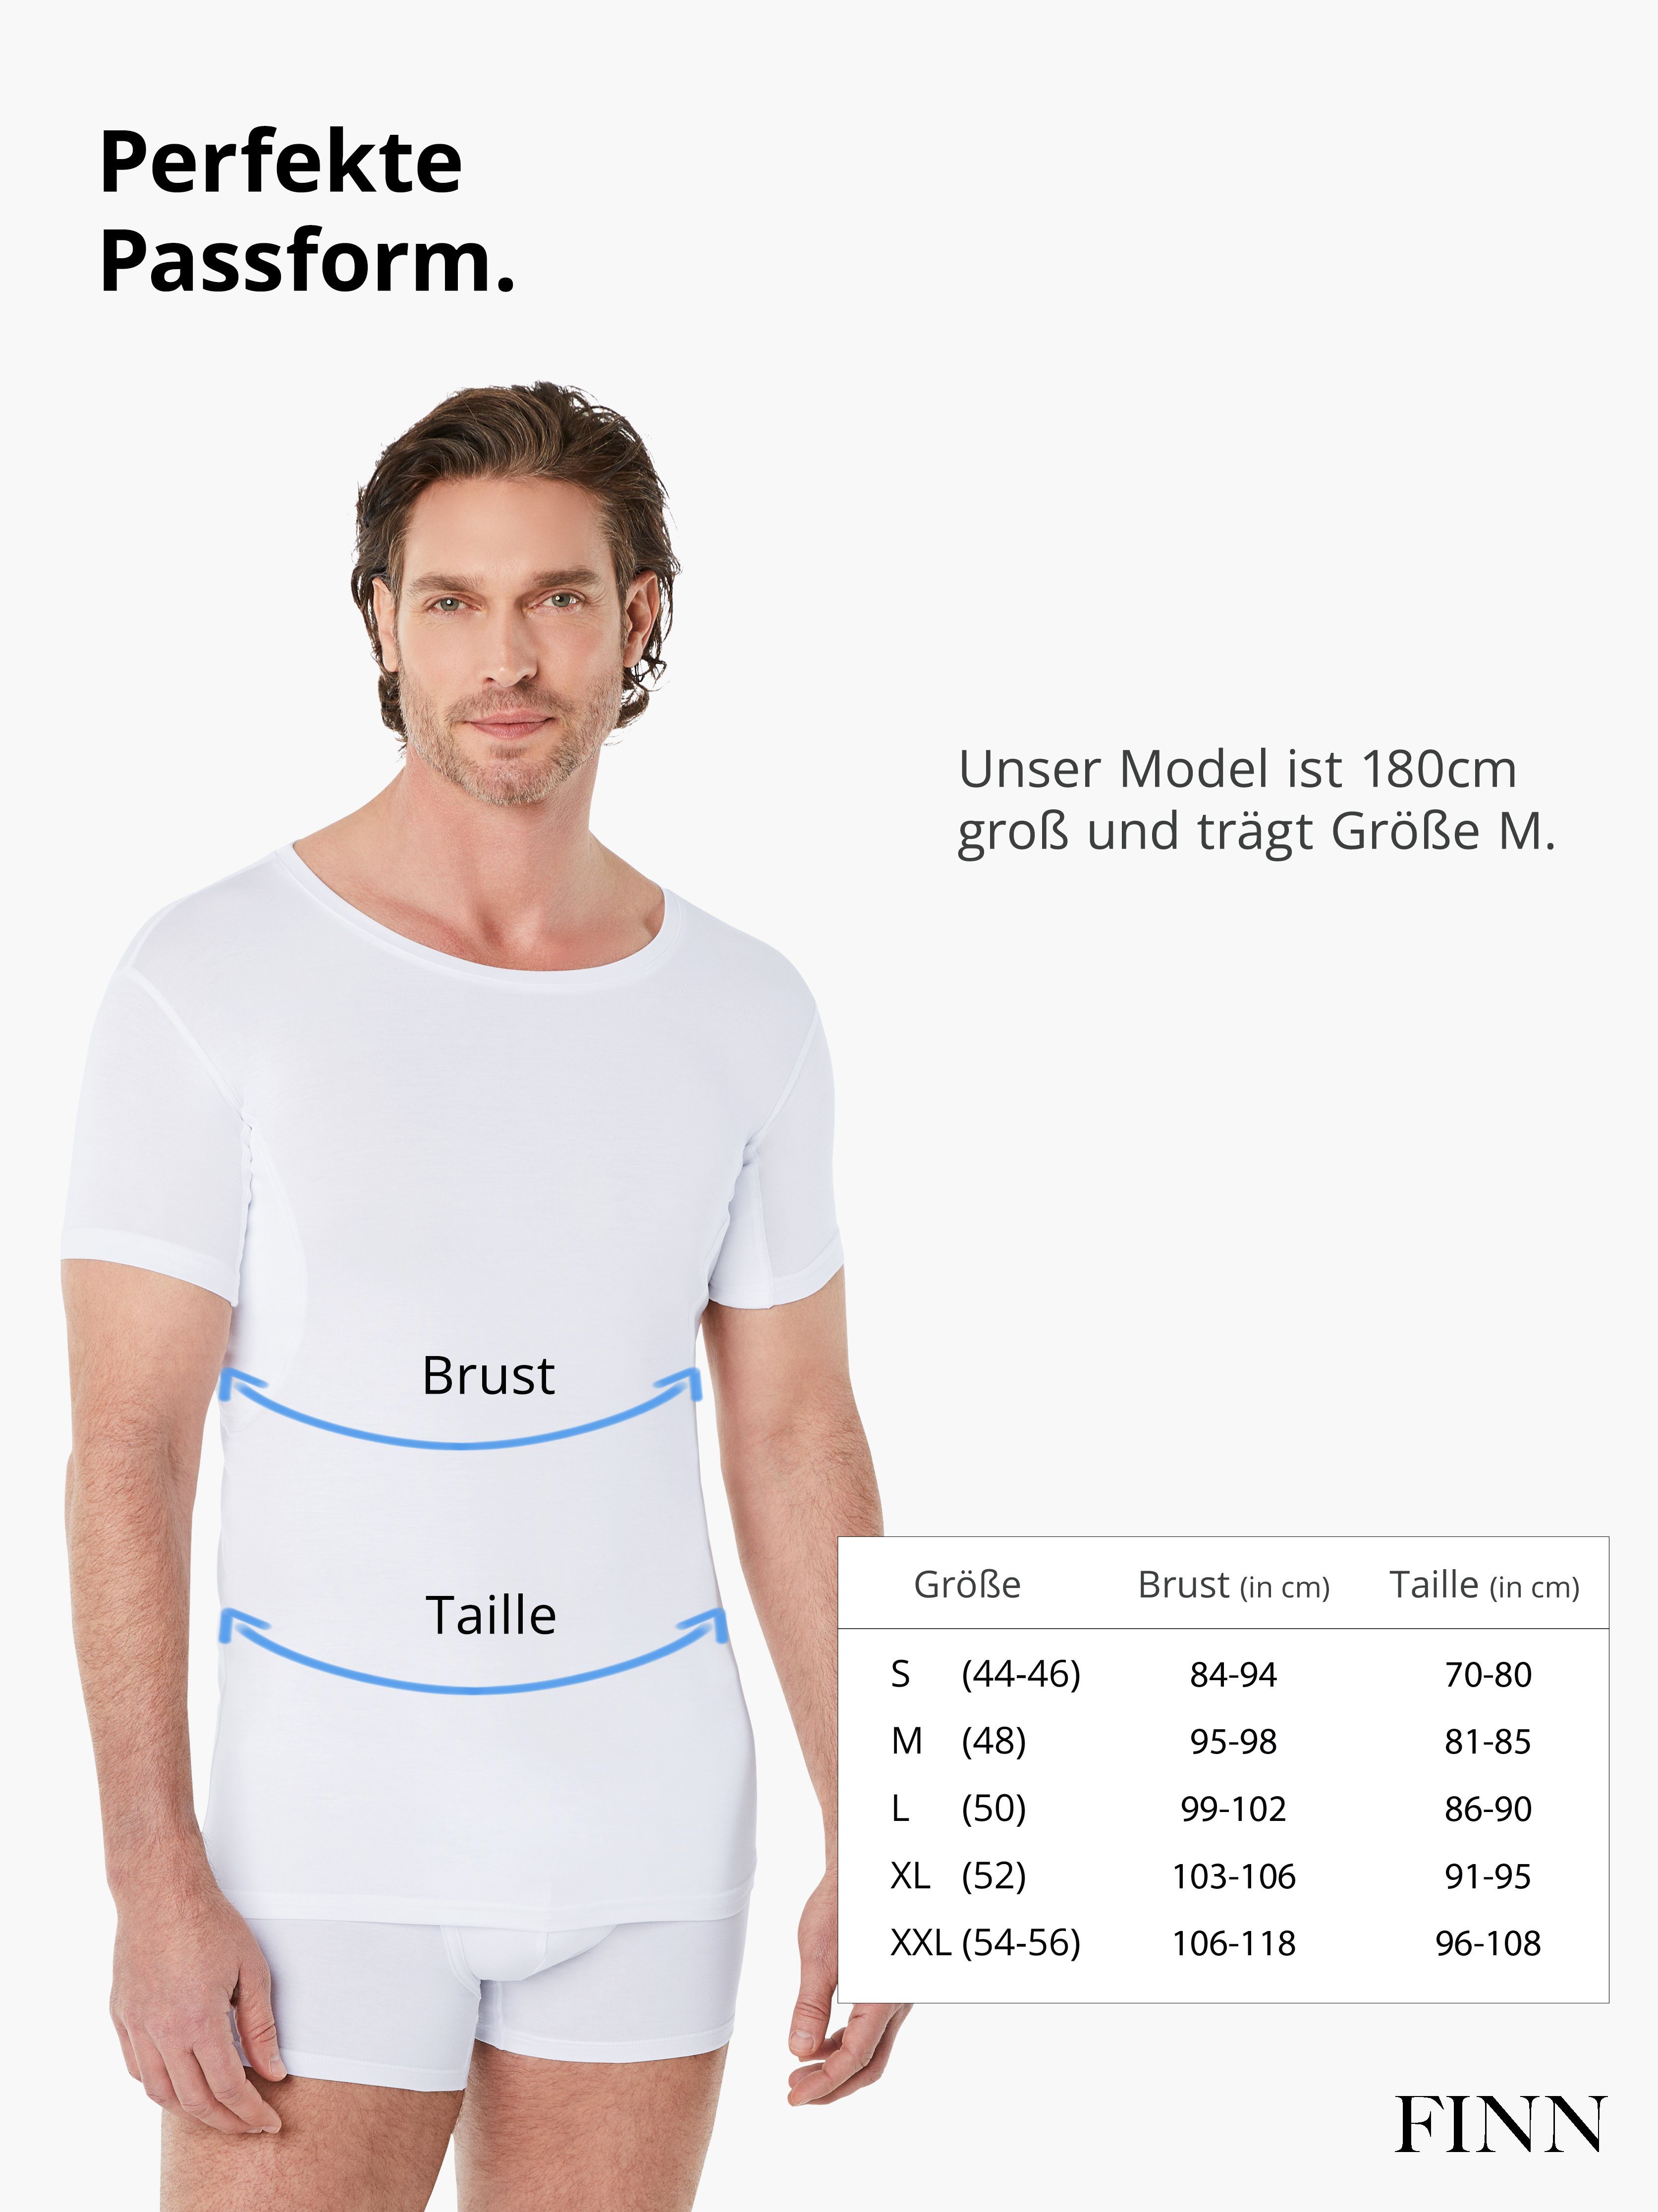 Schutz mit Wirkung vor Unterhemd Schweißflecken, garantierte Unterhemd Anti-Schweiß 100% Design FINN Rundhals Herren